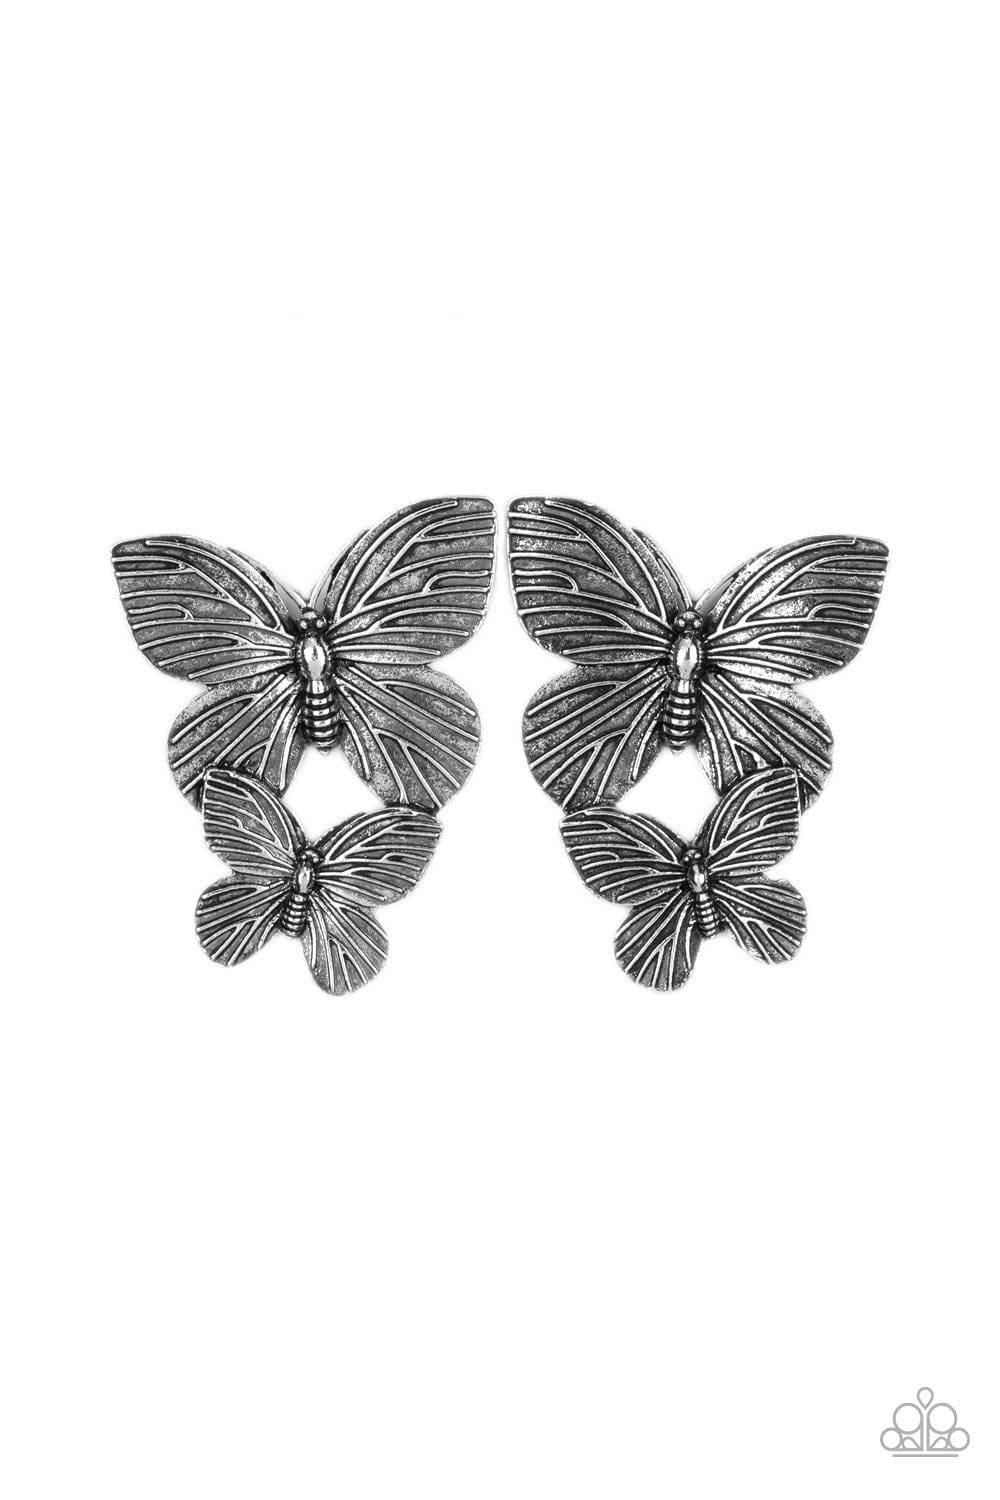 Paparazzi Accessories - Blushing Butterflies - Silver Earrings - Bling by JessieK